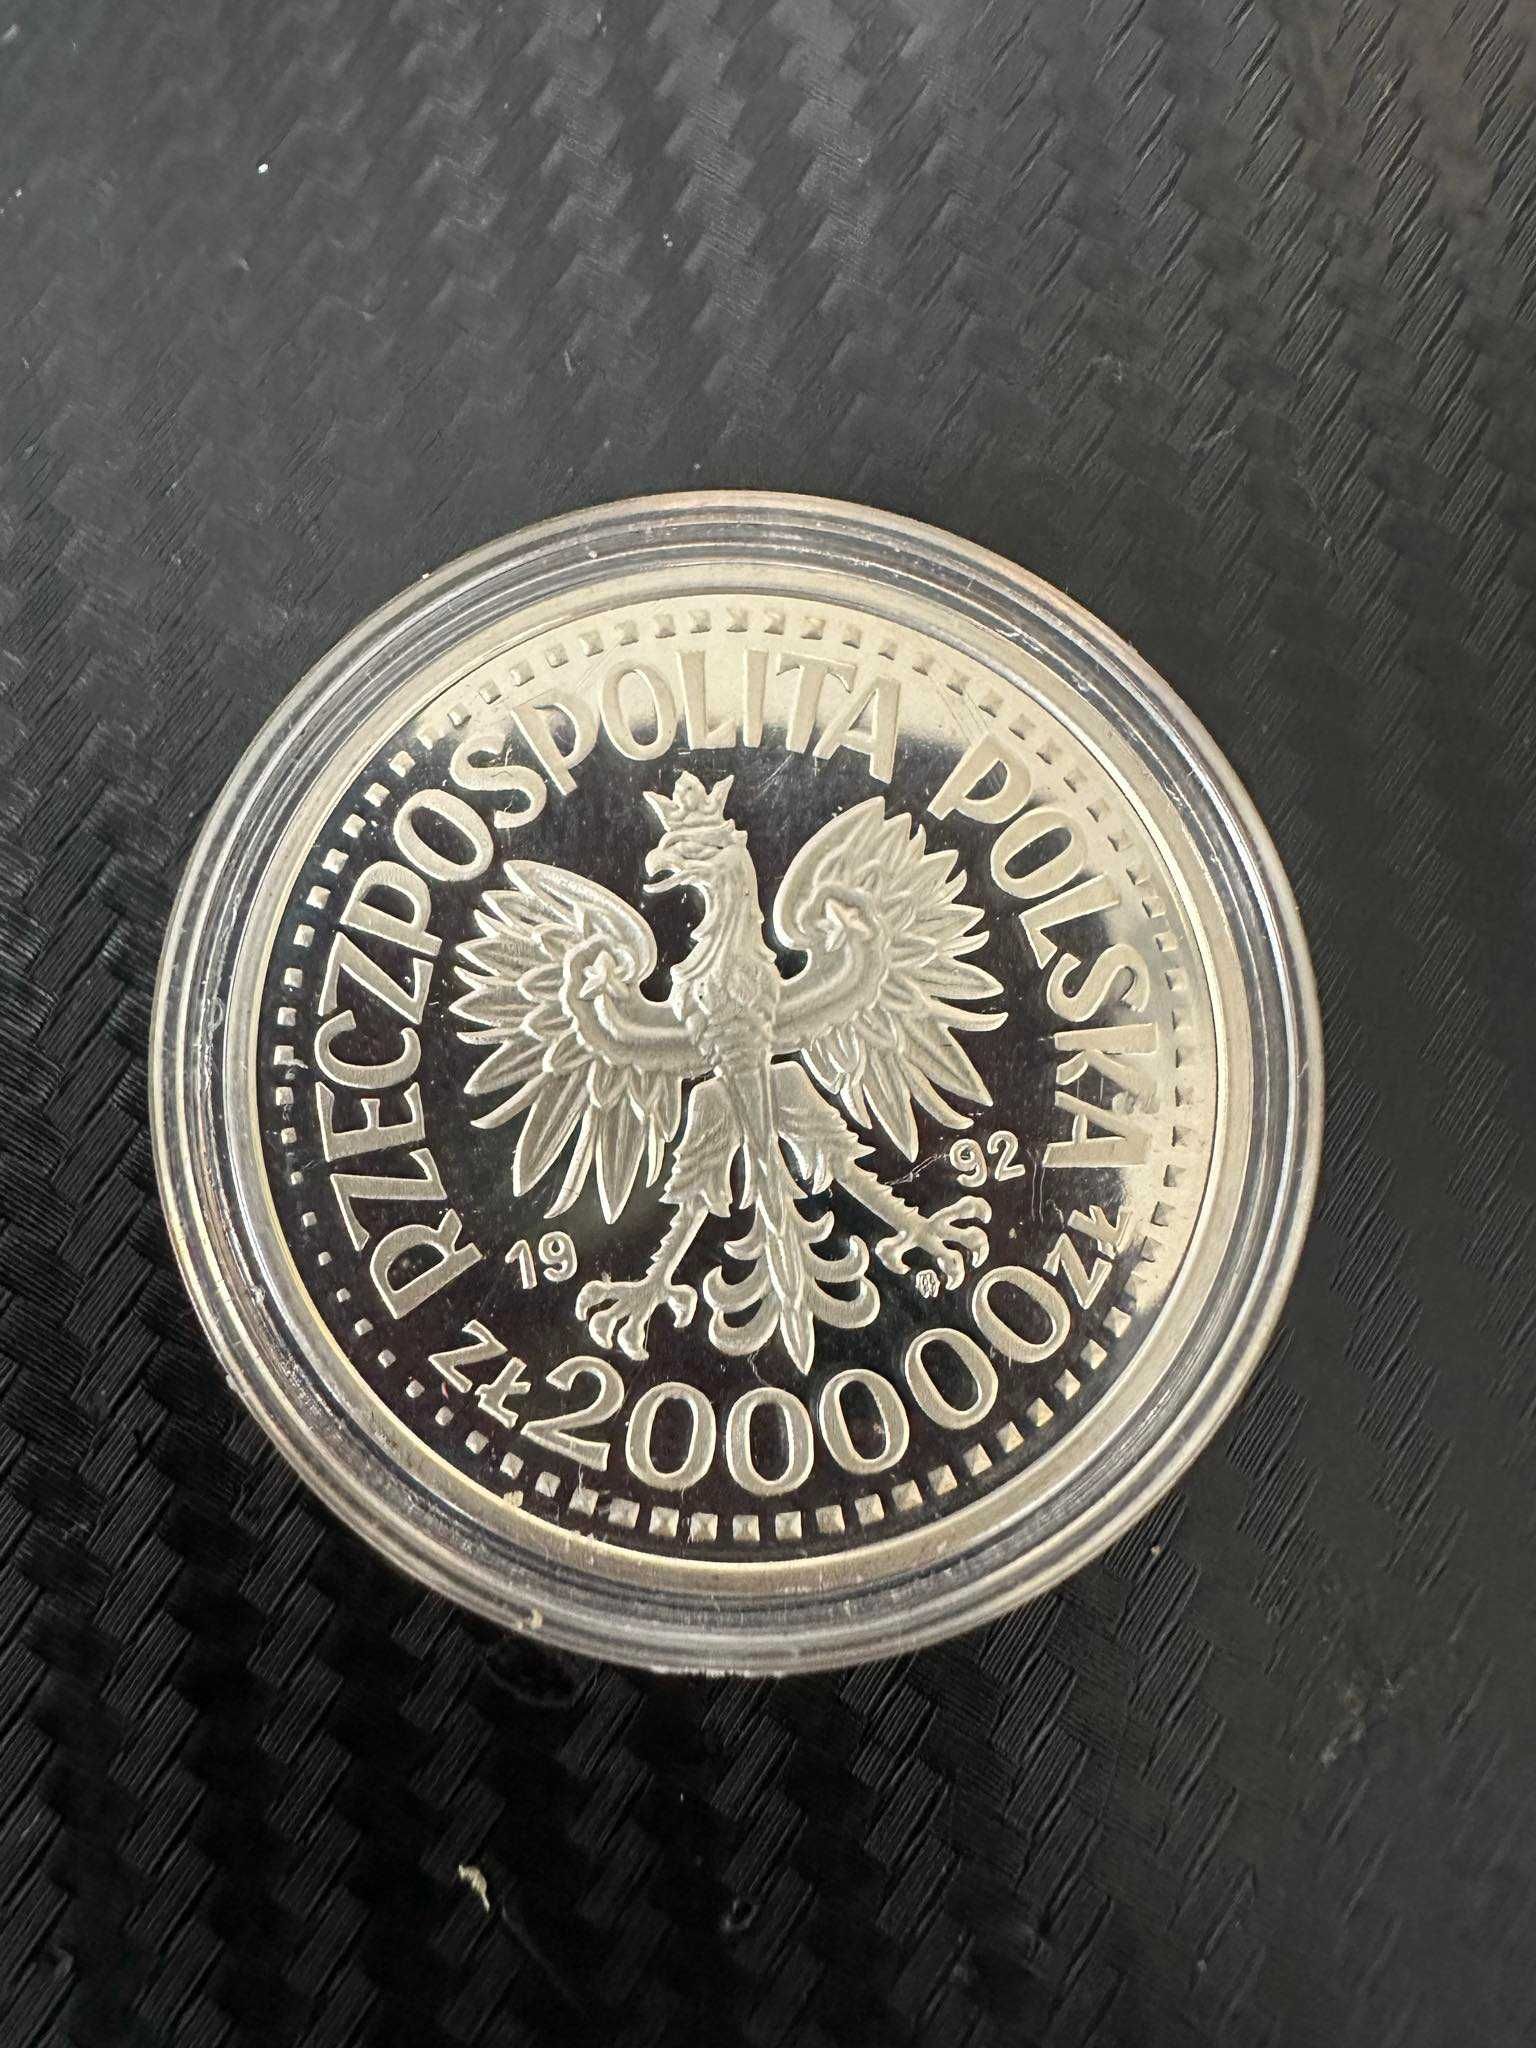 Moneta srebrna 200 000 zł Stanisław Staszic-1992 r.